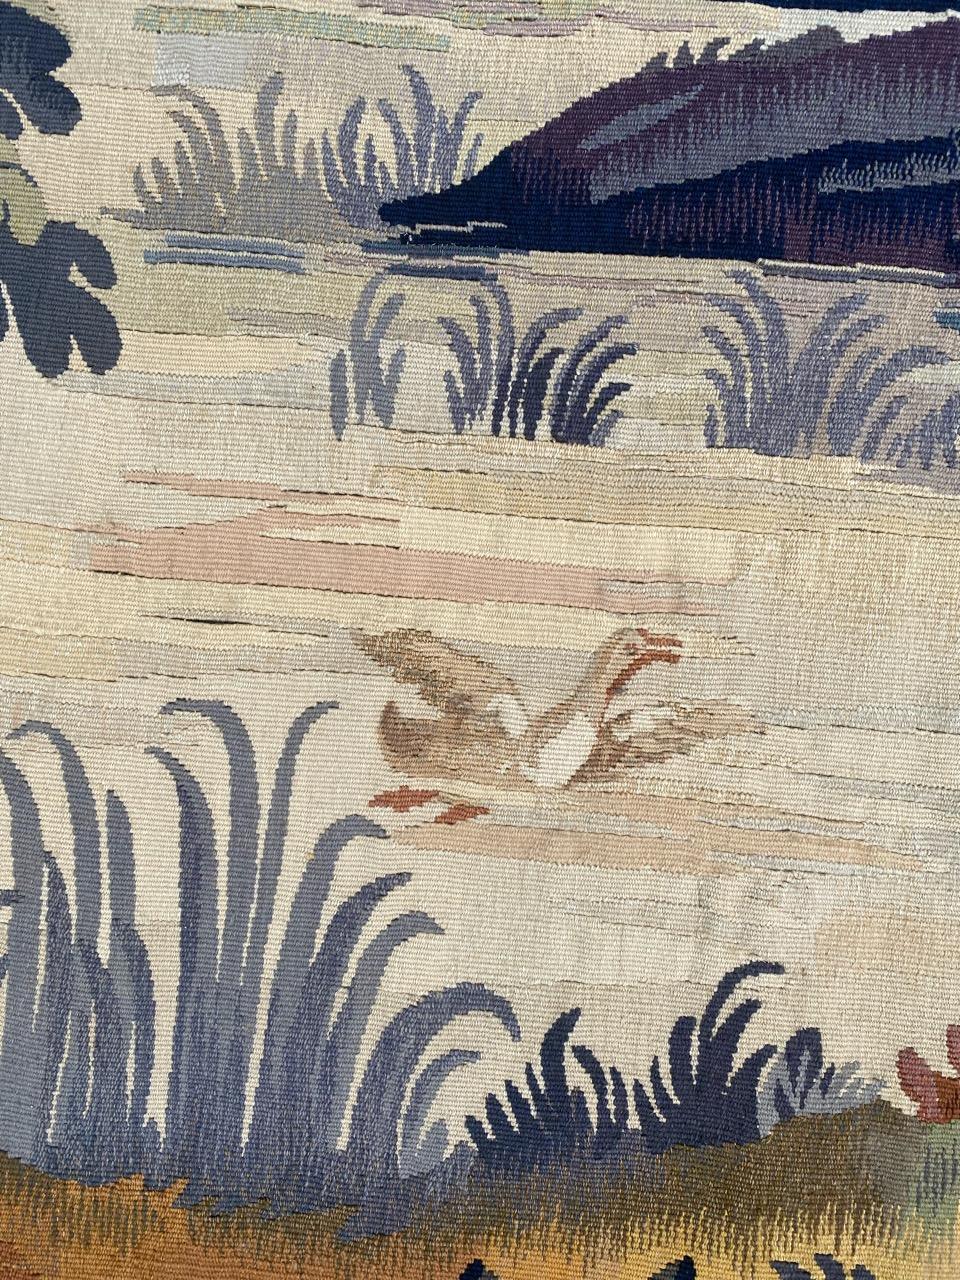 Belle tapisserie française d'Aubusson du début du 20ème siècle avec un beau dessin de scène champêtre et de belles couleurs, entièrement tissée à la main avec de la laine et de la soie.

✨✨✨
